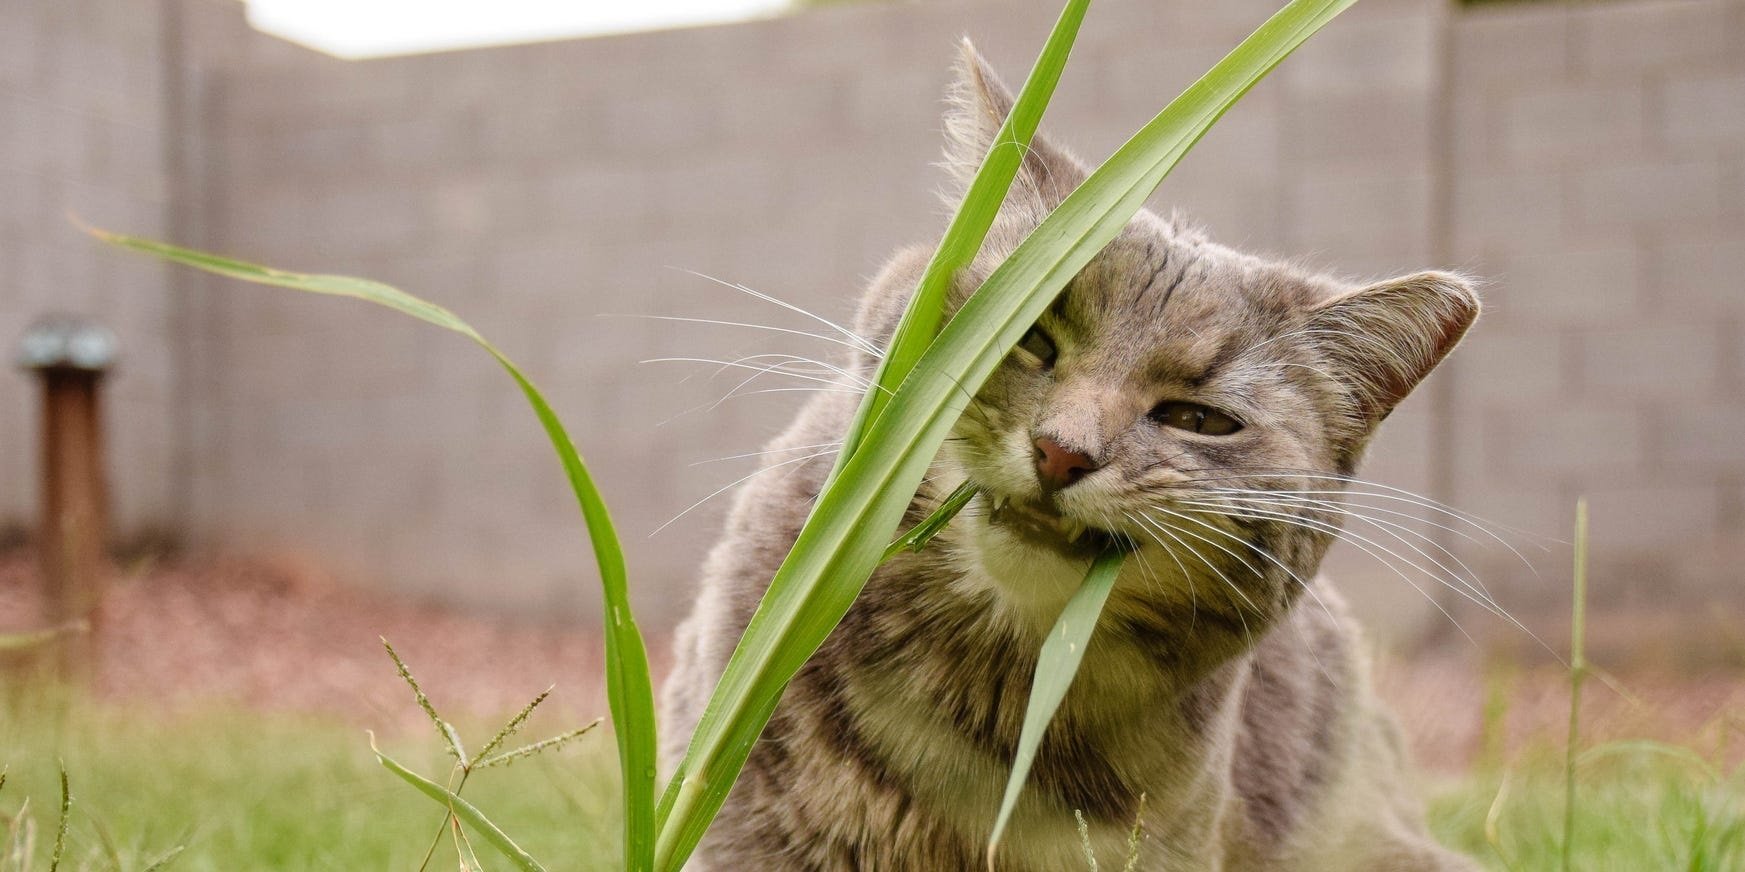 bahçede ot yemeye çalışan kedi